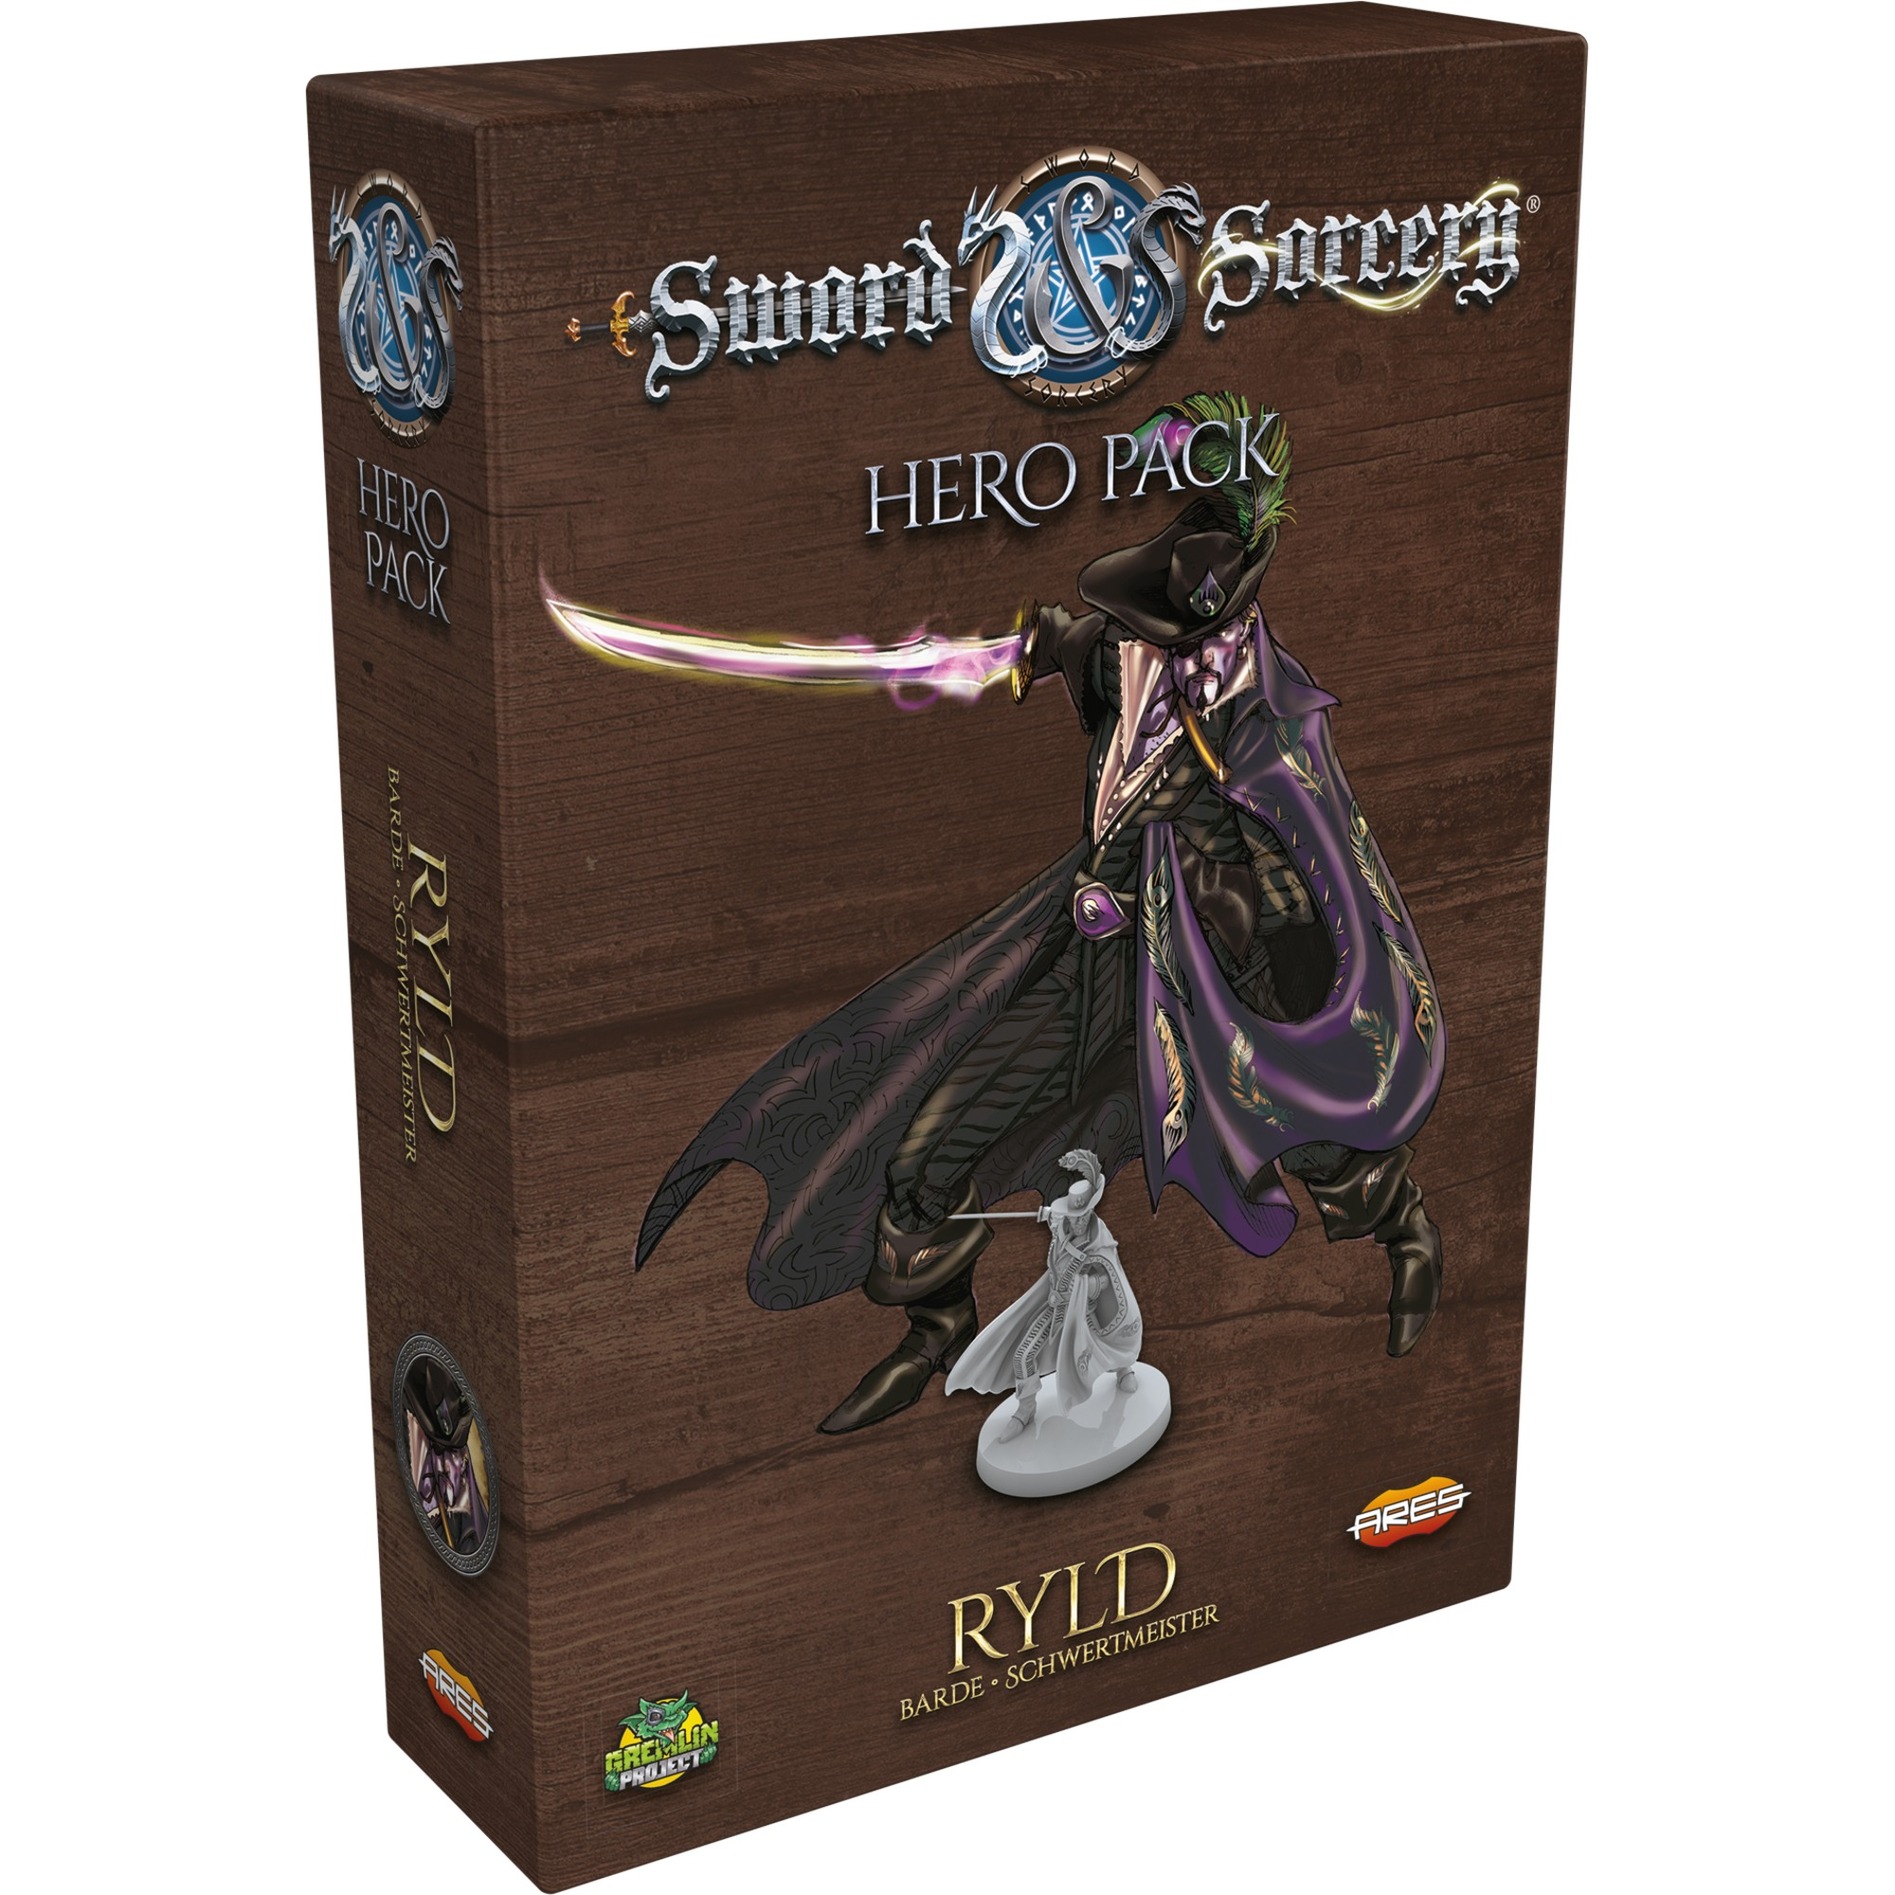 Image of Alternate - Sword & Sorcery - Ryld, Brettspiel online einkaufen bei Alternate